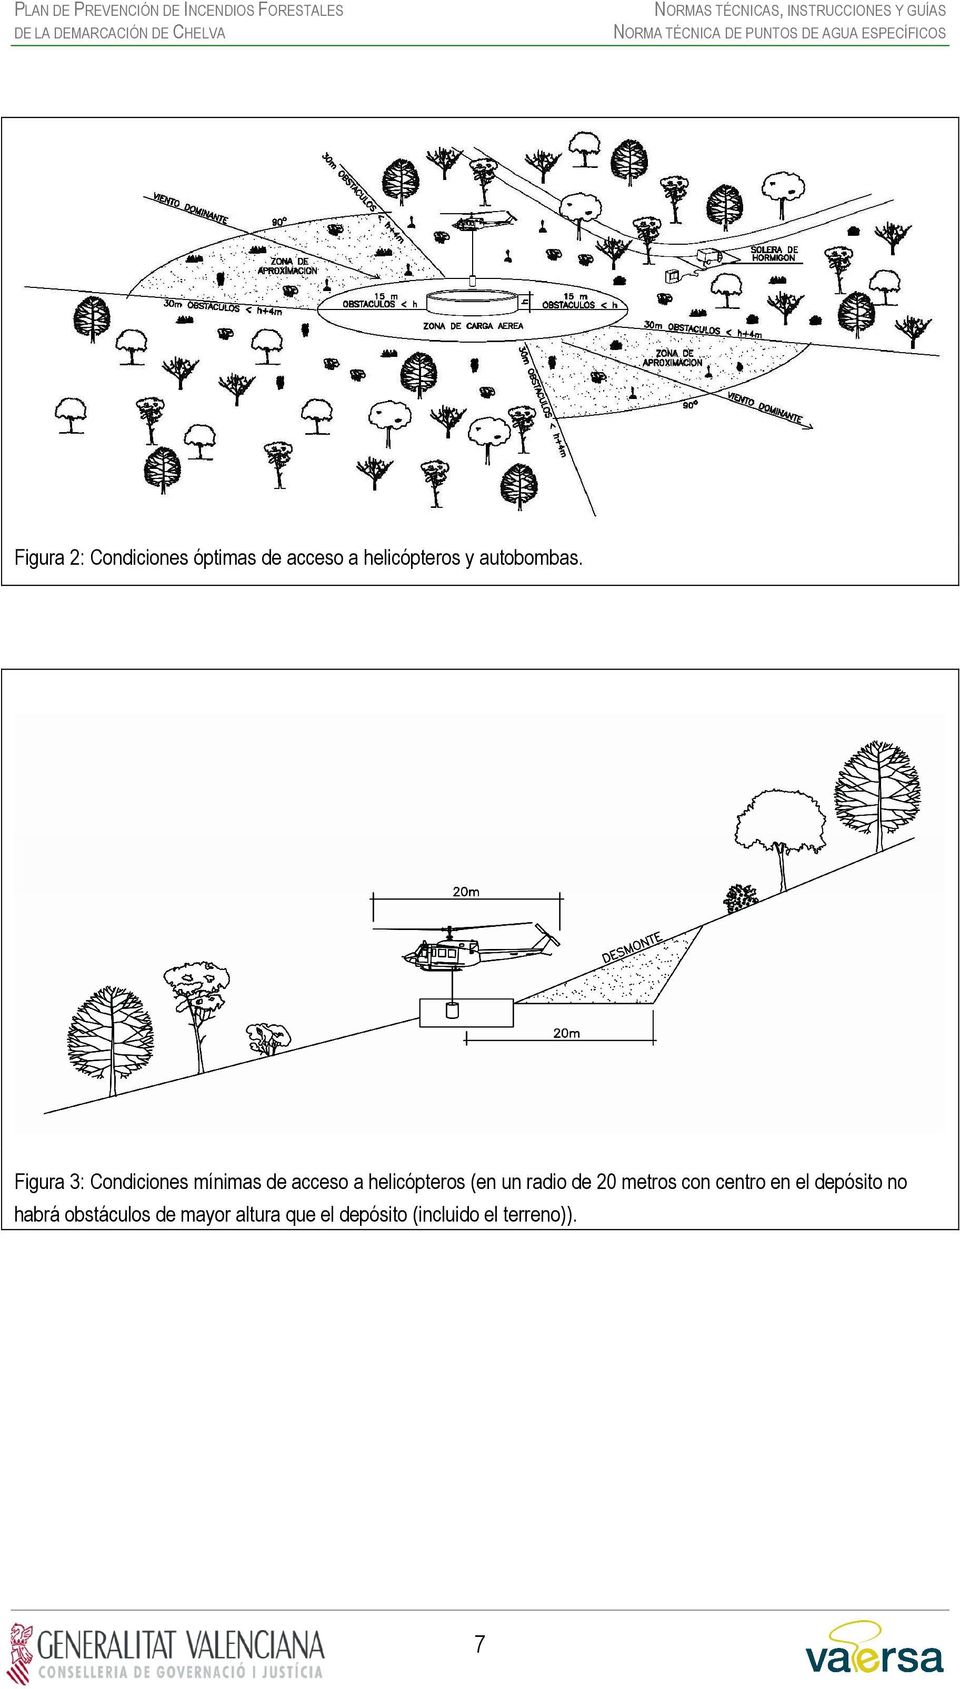 Figura 3: Condiciones mínimas de acceso a helicópteros (en un